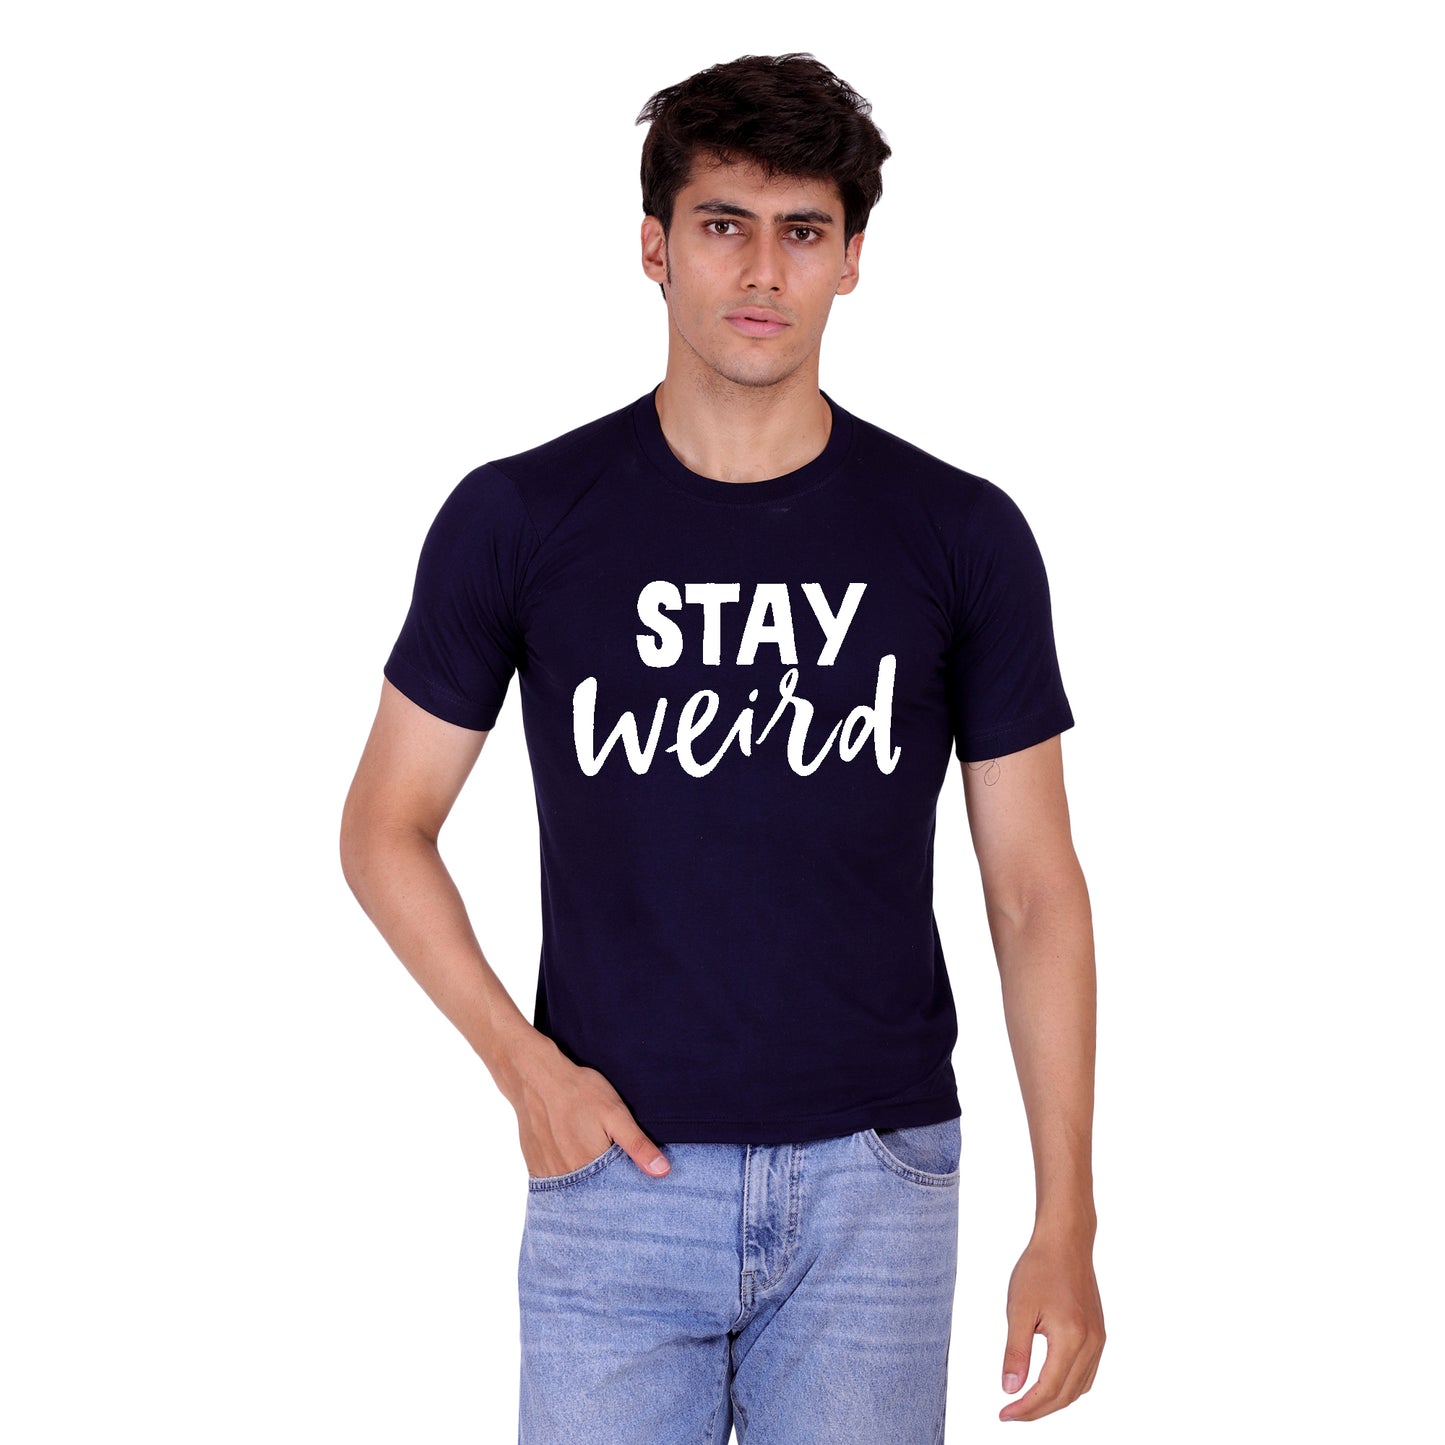 Stay Weird cotton T-shirt | T017